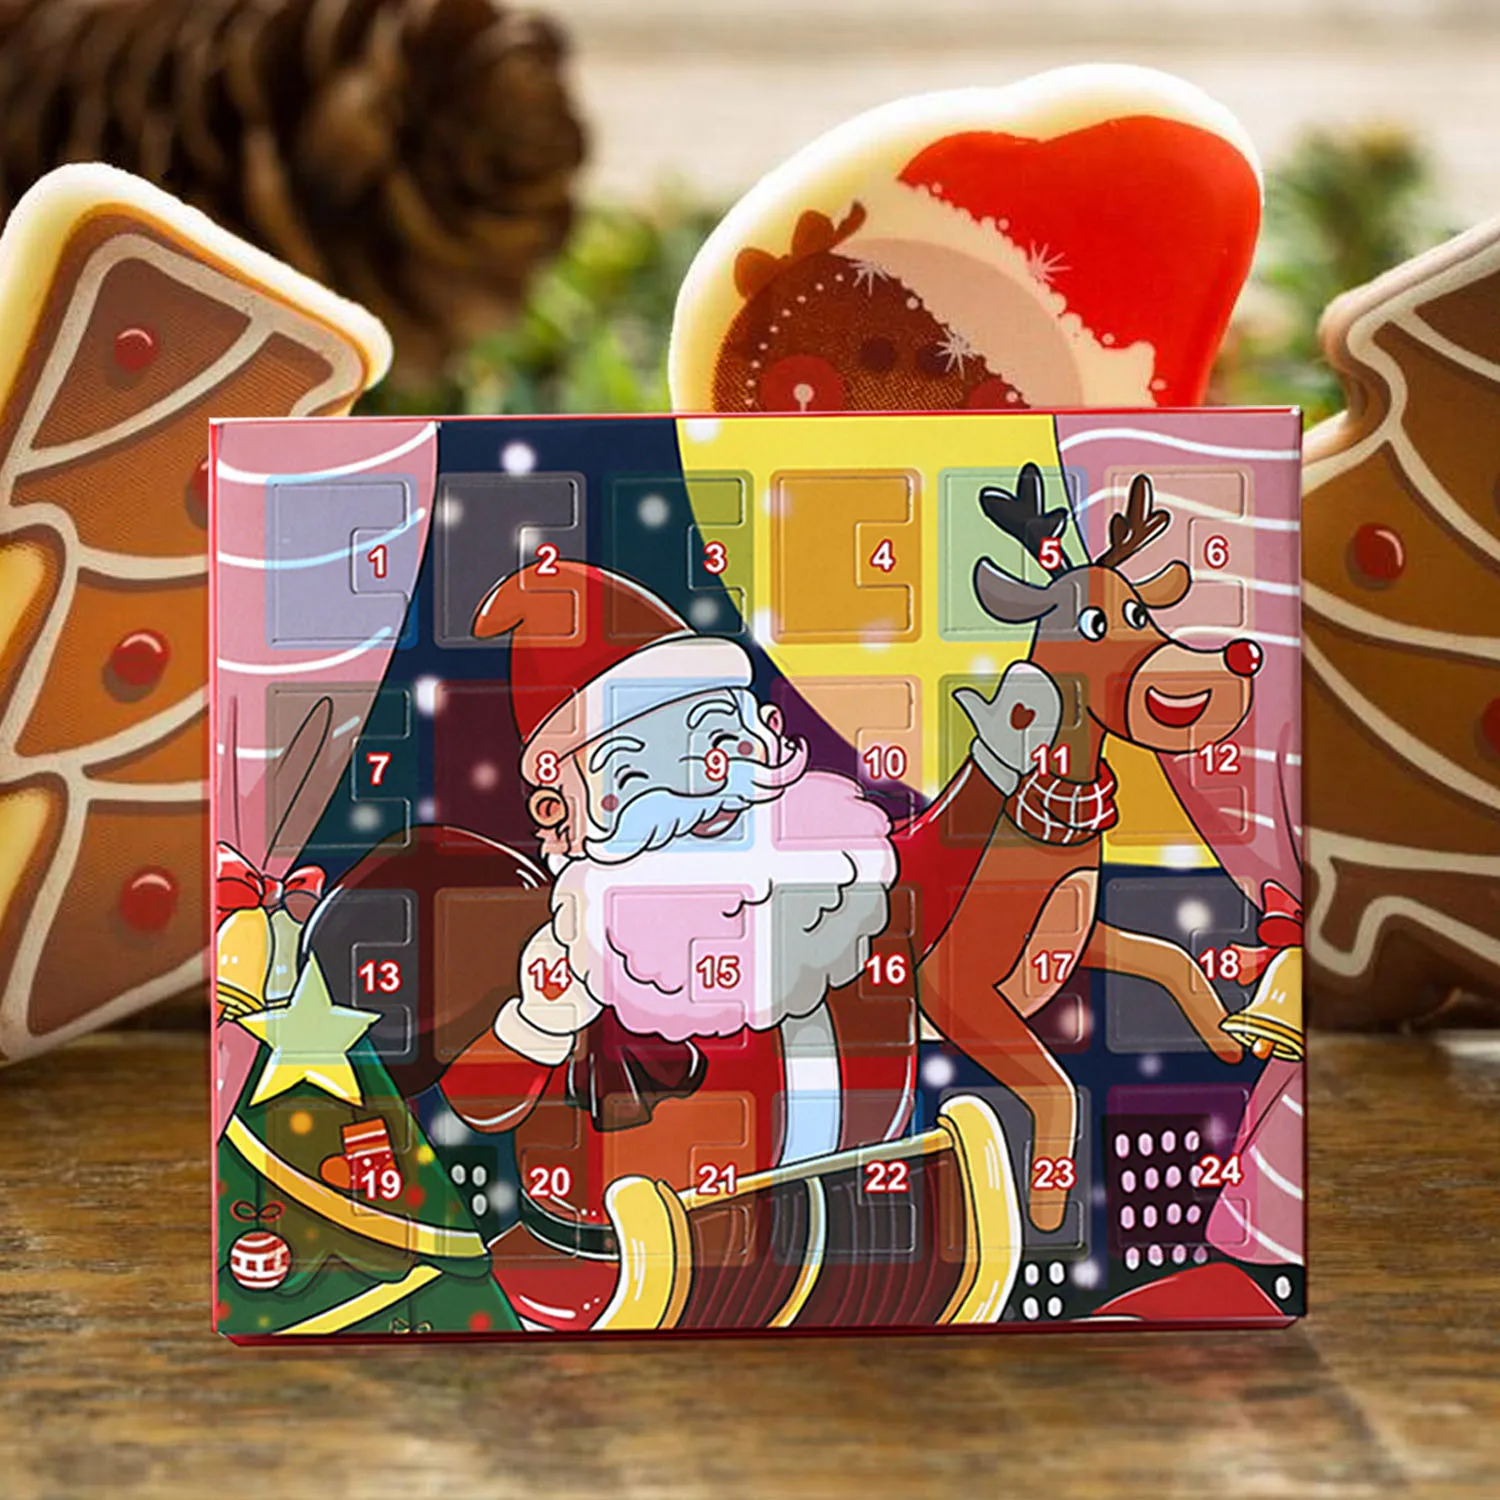 Behogar DIY Шарм браслет ювелирные изделия Адвент календарь обратного отсчета на Рождество Подарочный набор для детей Рождество Санта Клаус лося коробка календарь